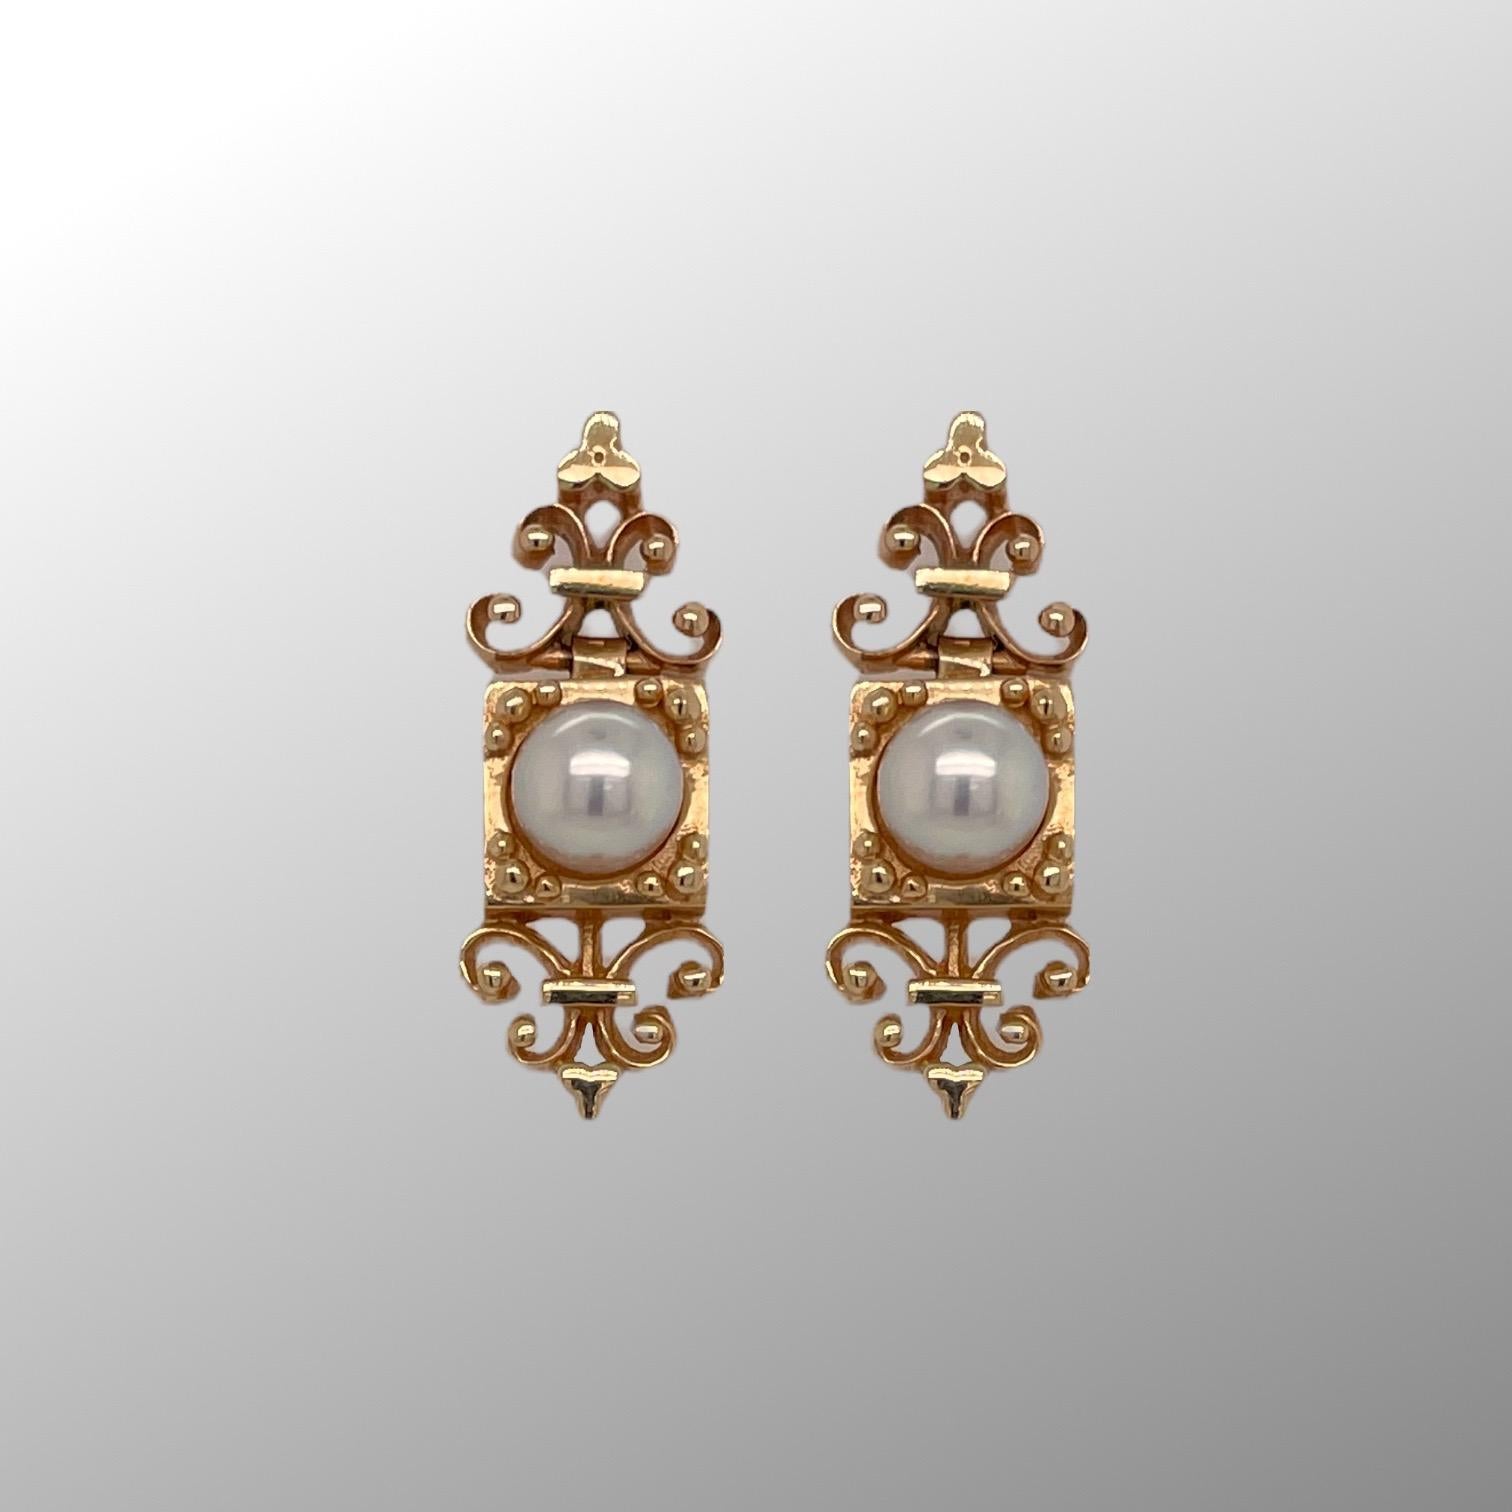 Les boucles d'oreilles de style vintage sont en or jaune 14k et contiennent deux perles de mer du Sud de 5,8 mm. Les boucles d'oreilles mesurent environ 1